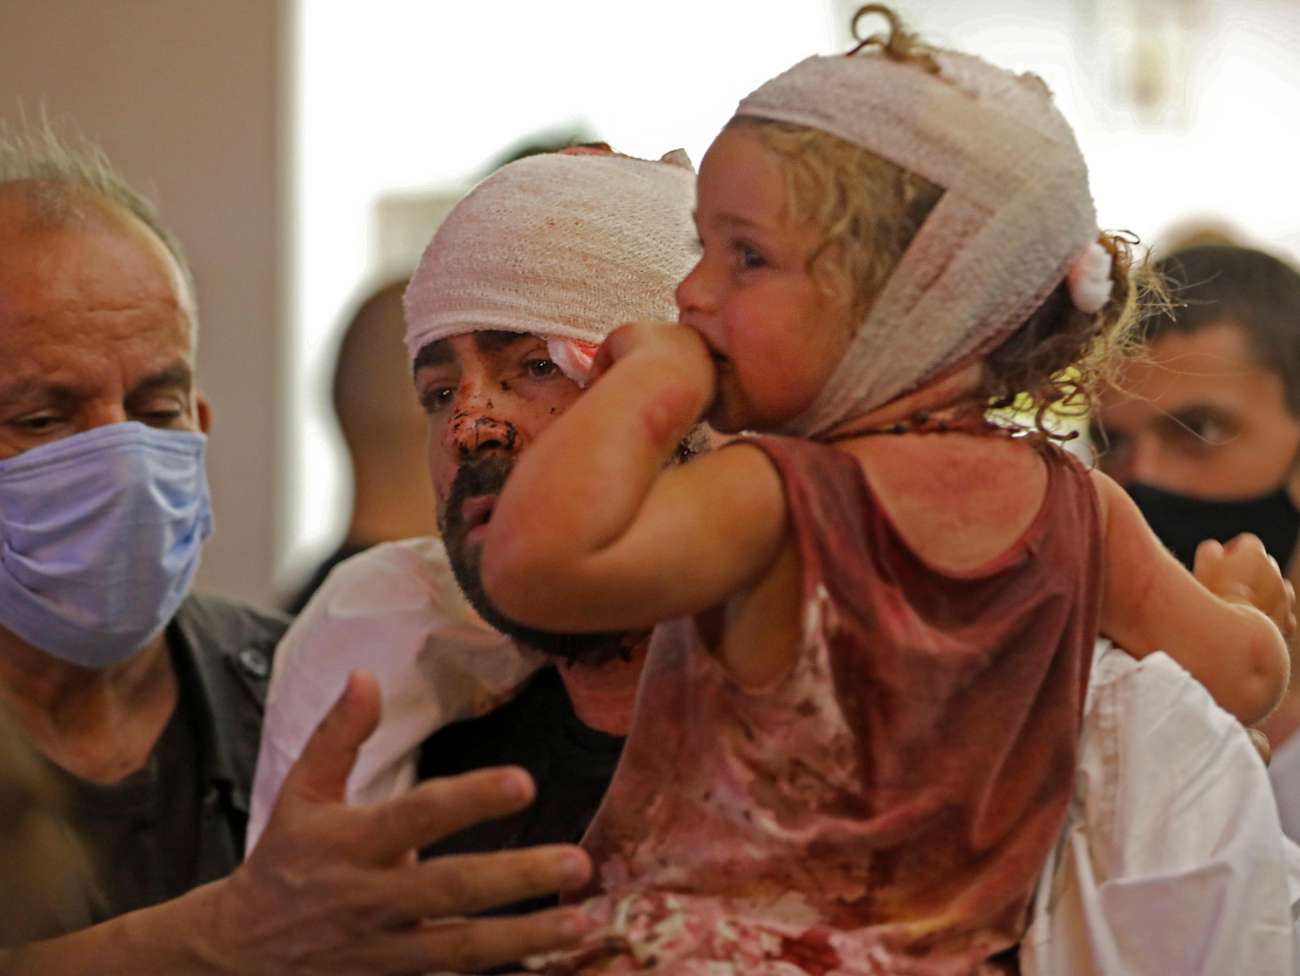 Những hình ảnh thương tâm tại hiện trường vụ nổ kinh hoàng đang làm chấn động thủ đô của Liban - Ảnh 2.